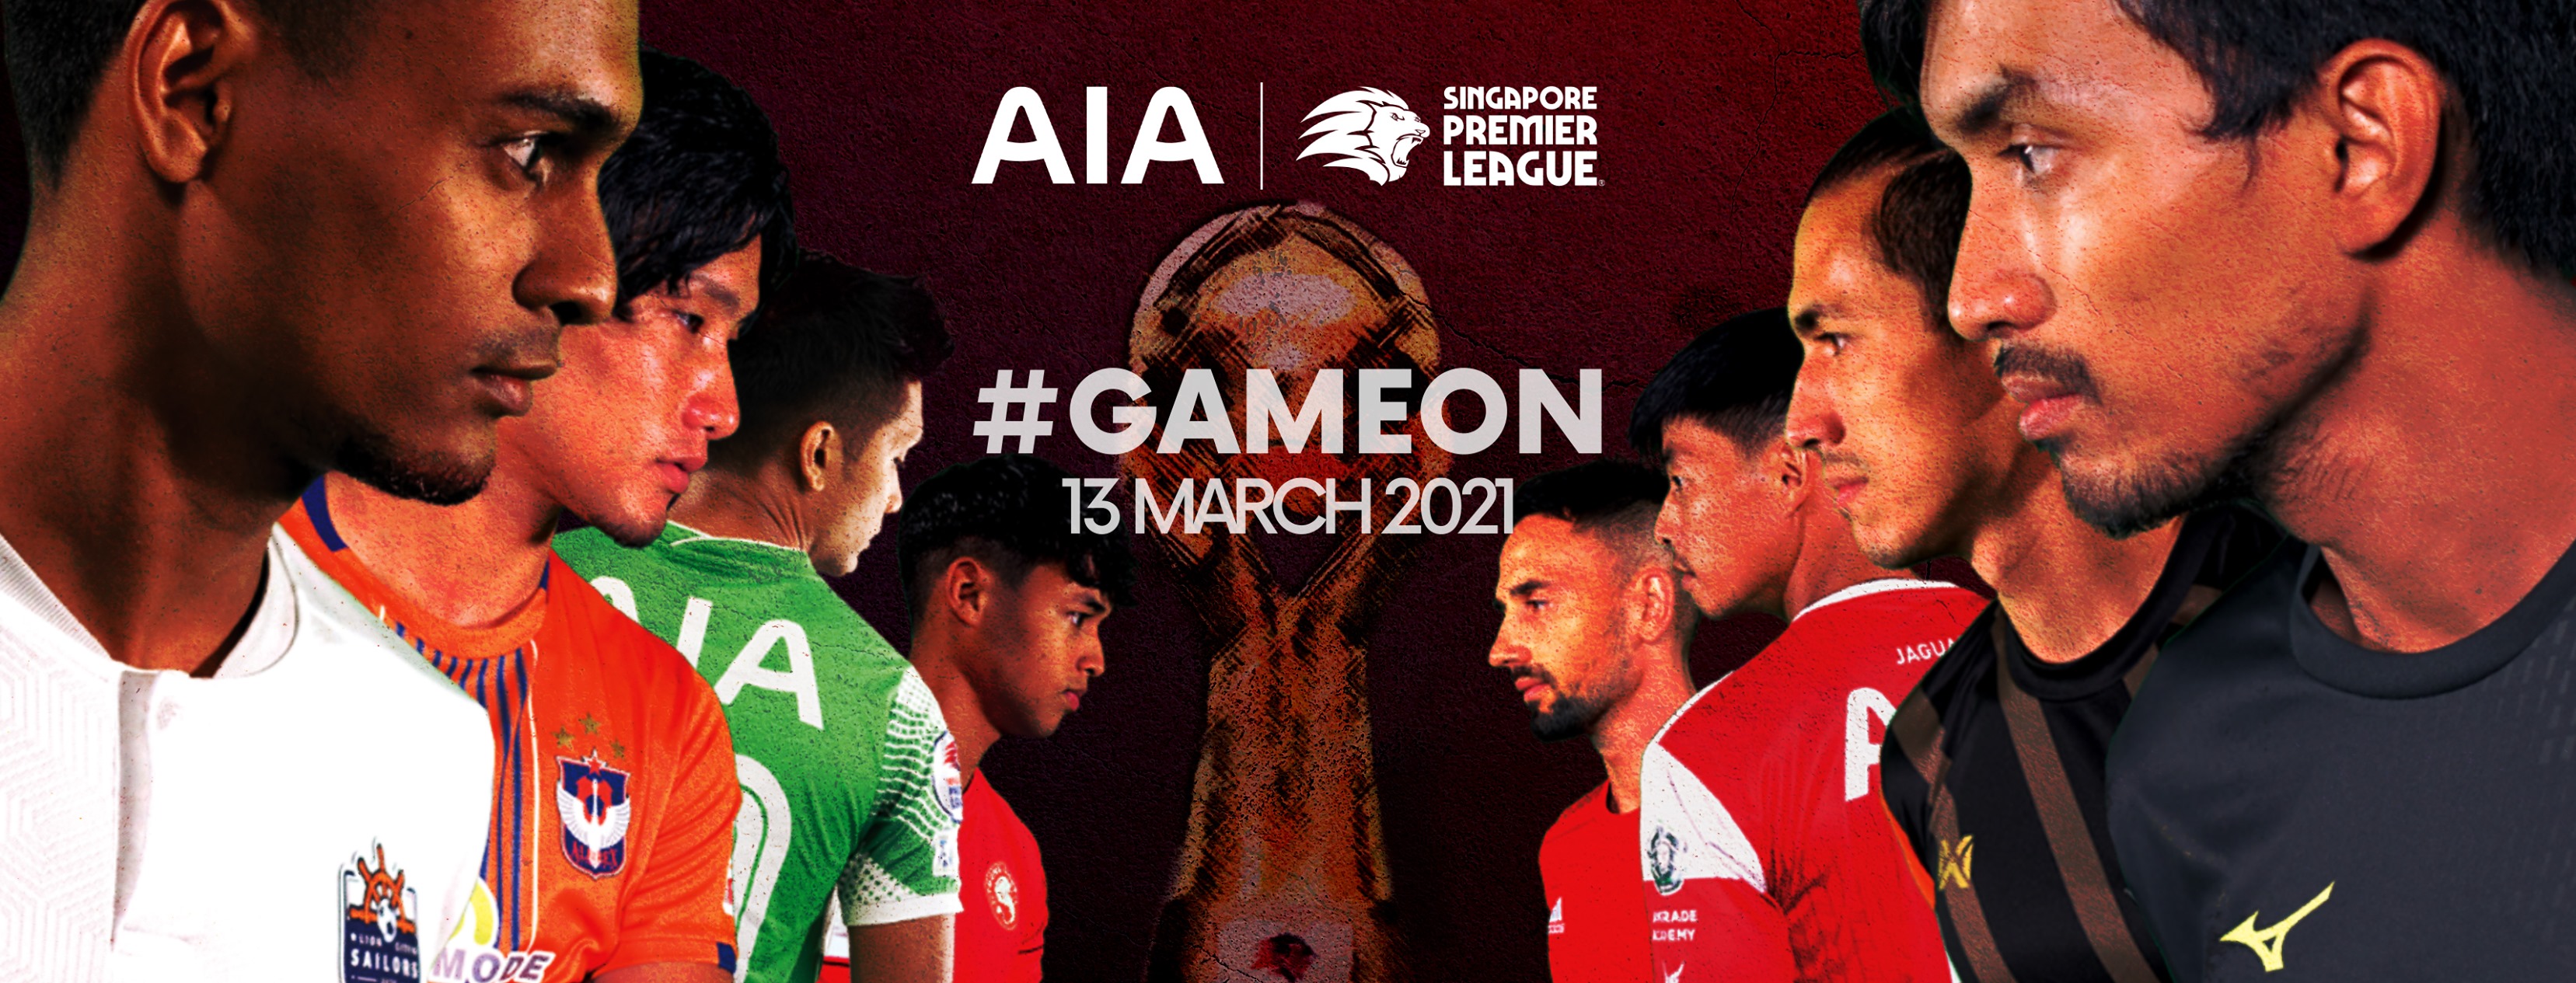 Singapore Premier League #GAMEON 13 March 2021